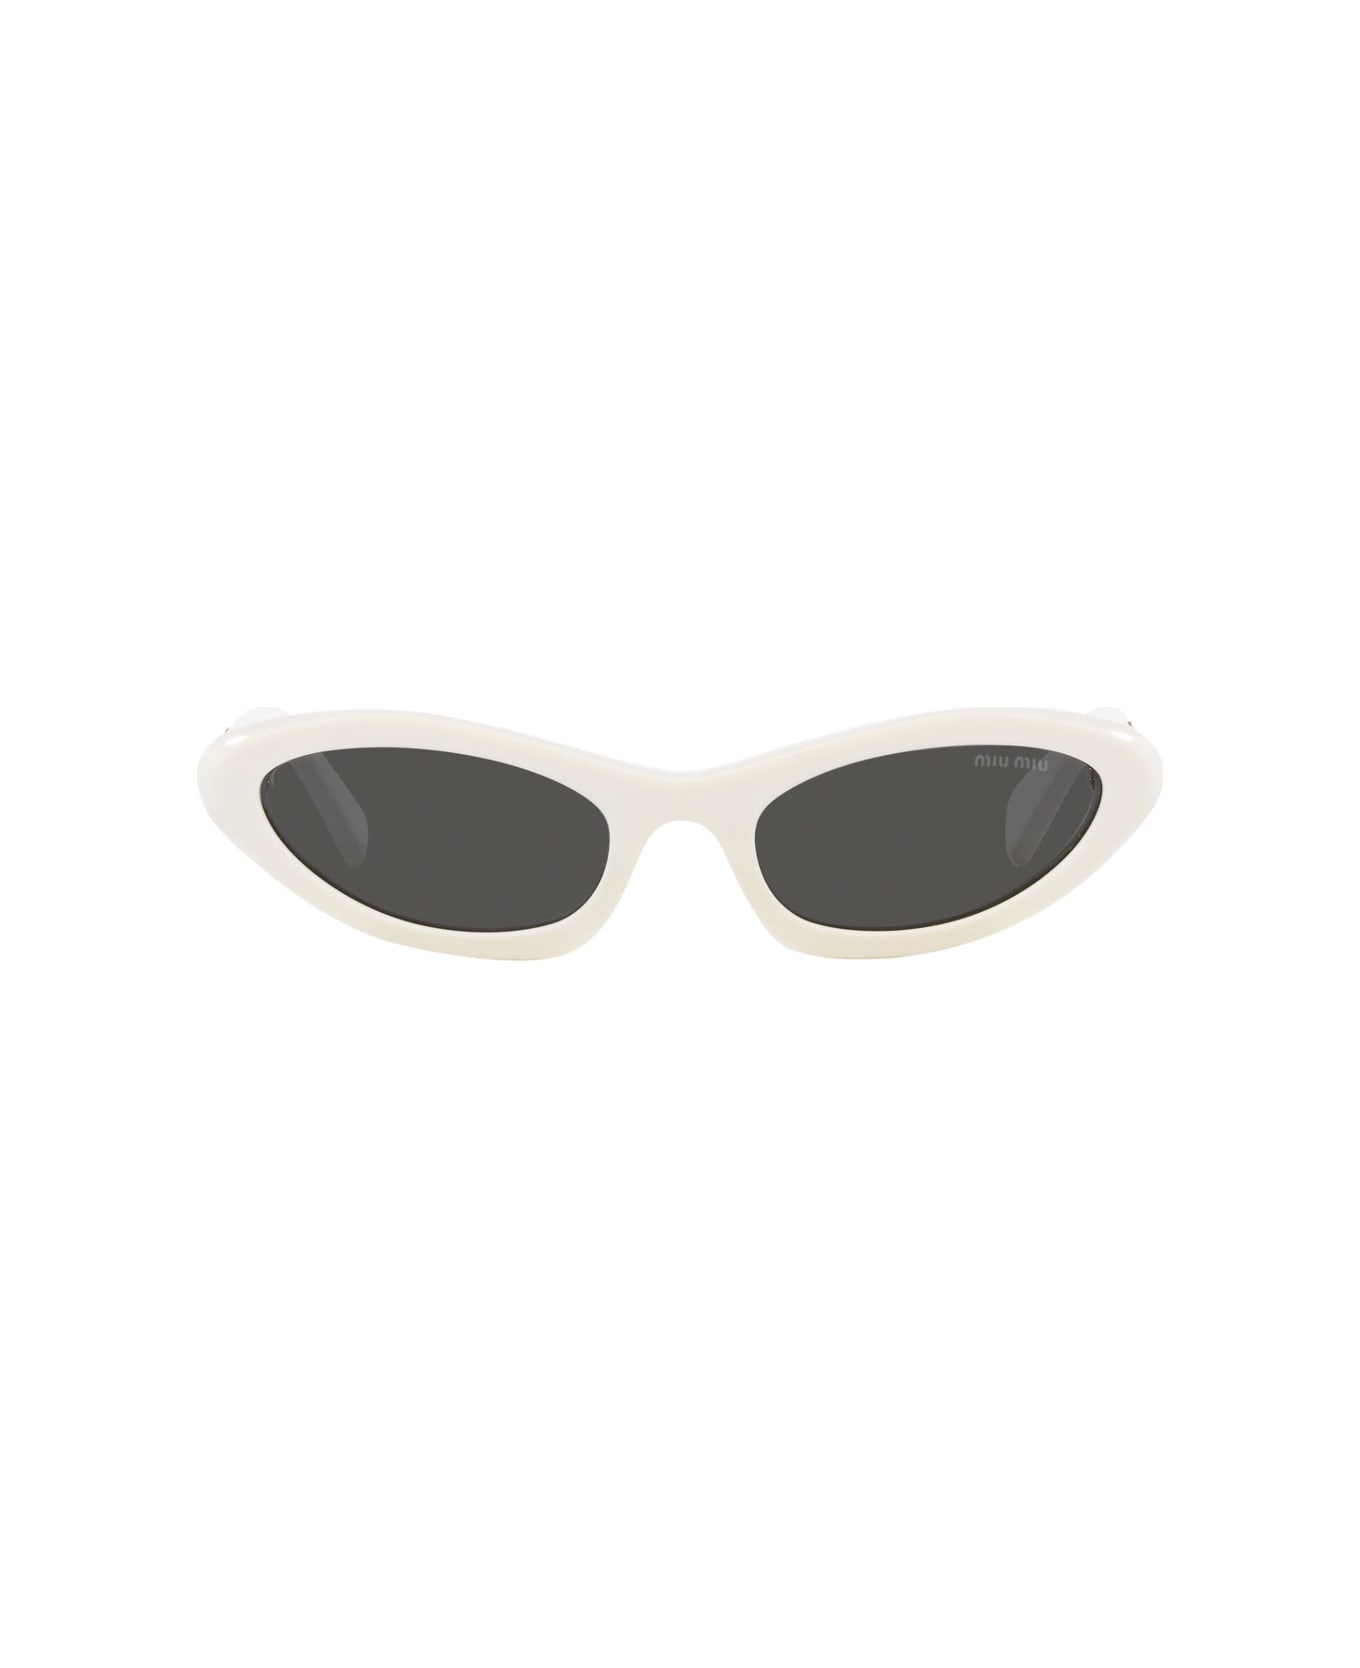 Miu Miu 0mu 09ys Glimpse 1425s0 Bianco Sunglasses - Bianco